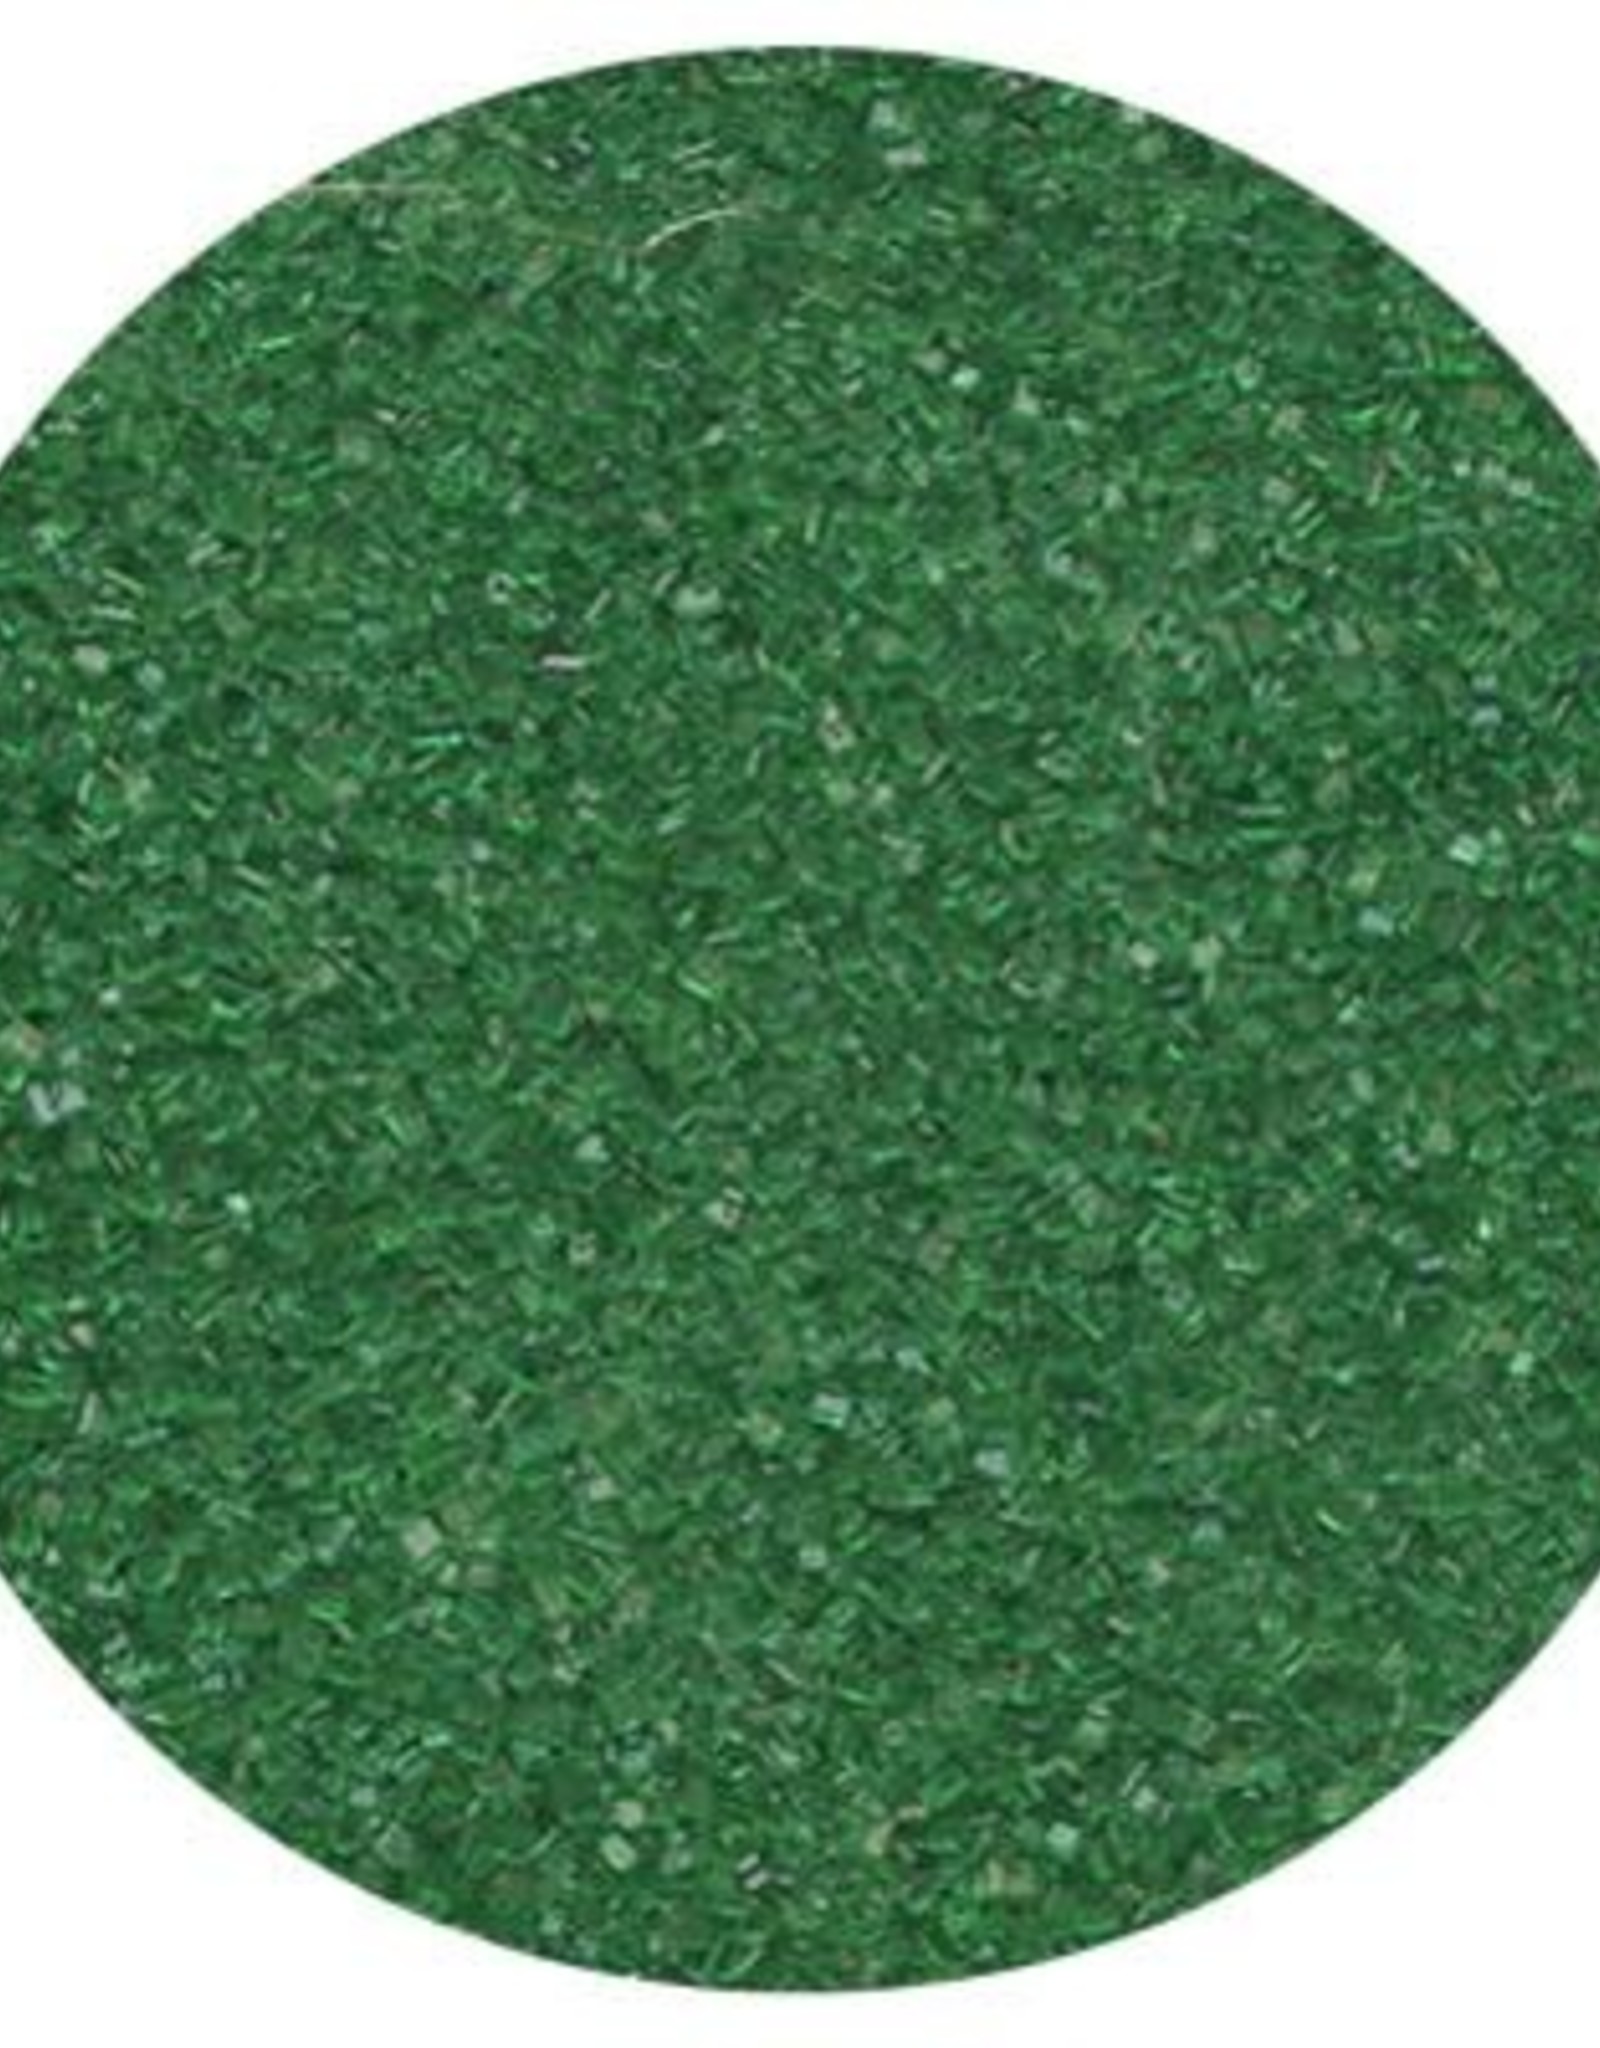 Green Sanding Sugar (12 ounces)